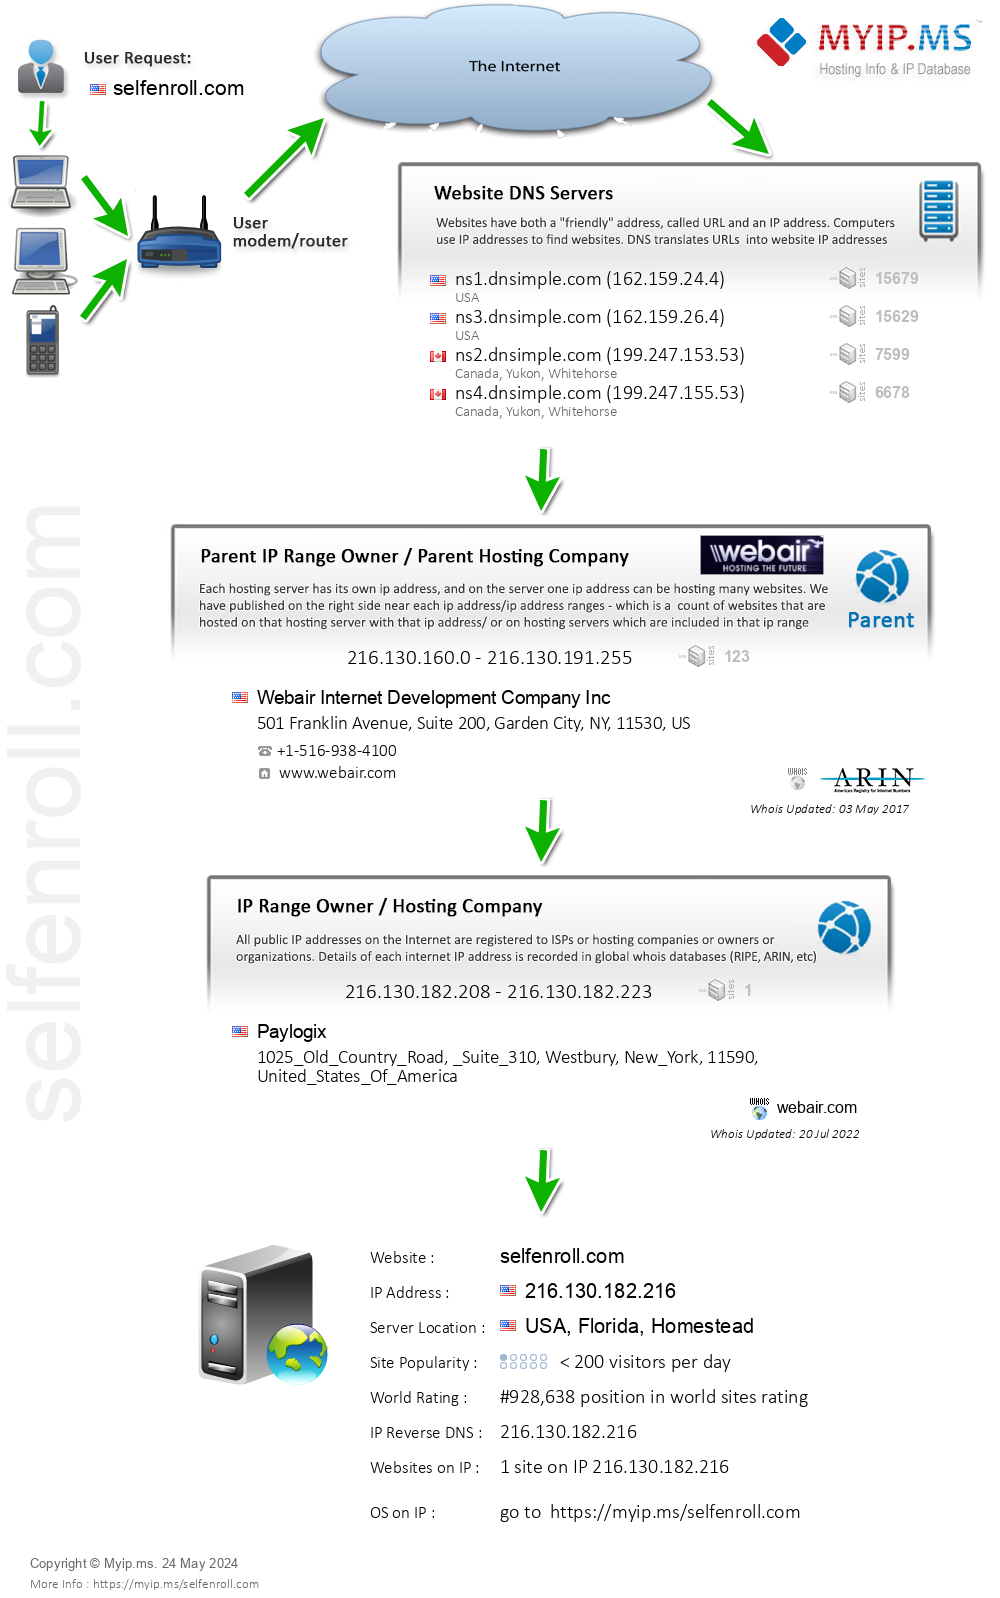 Selfenroll.com - Website Hosting Visual IP Diagram